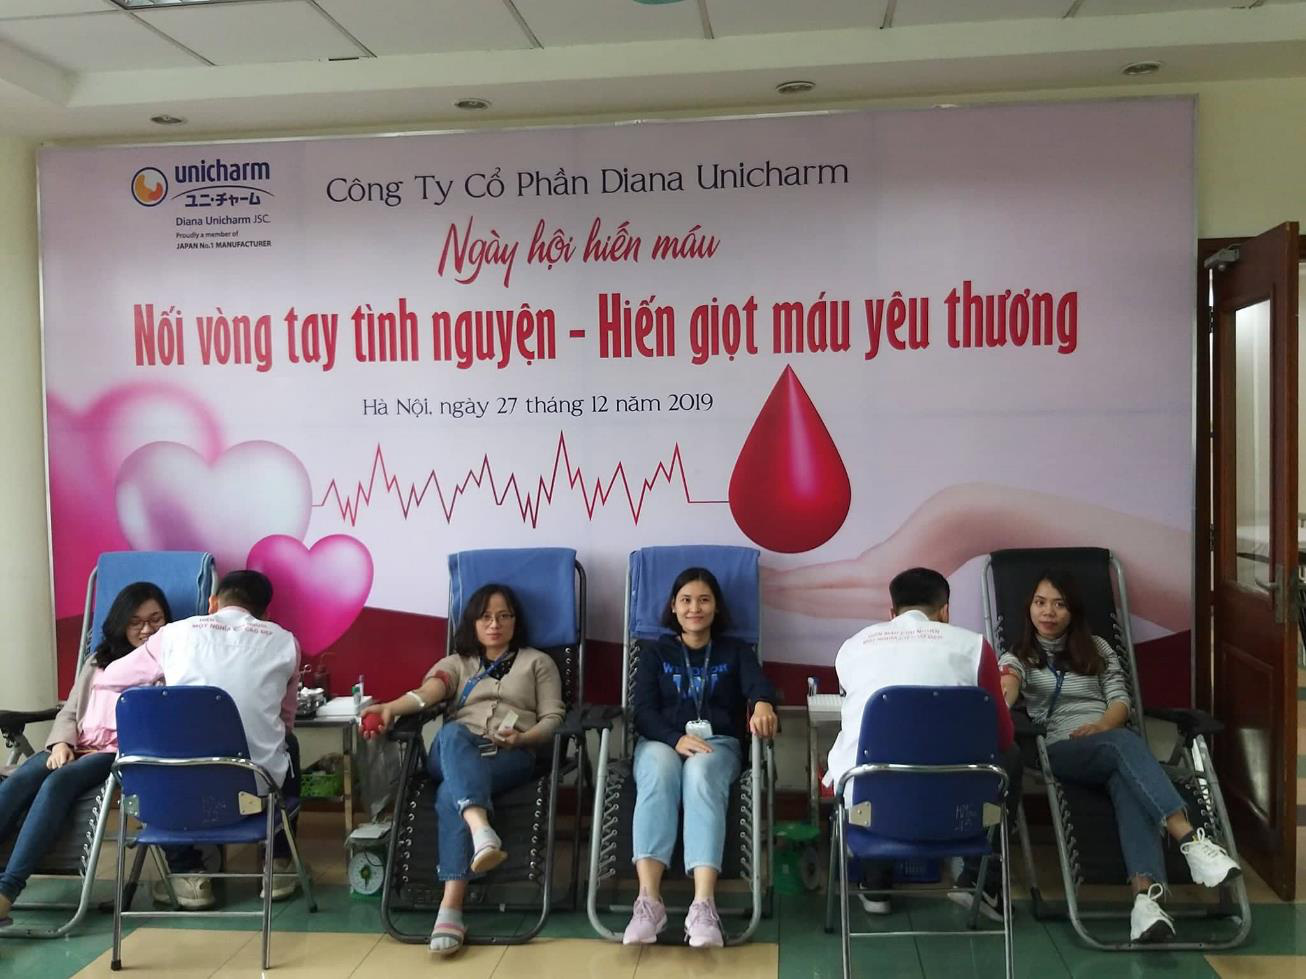 “Nối vòng tay tình nguyện-Hiến giọt máu yêu thương” góp gần 20.000ml máu cứu người - Ảnh 1.